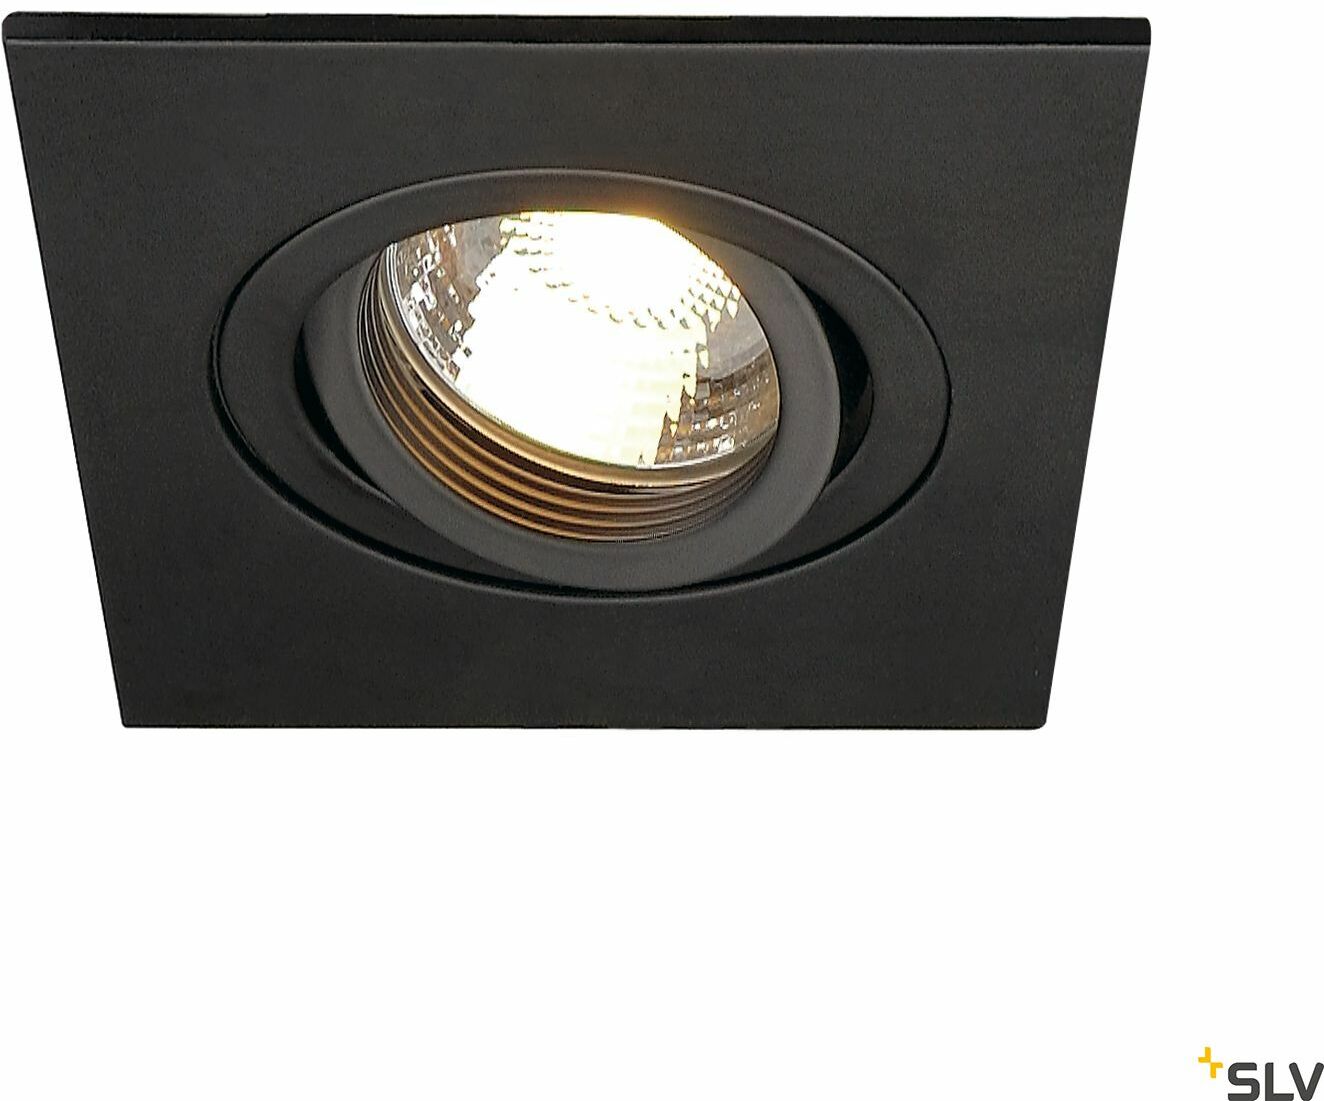 NEW TRIA XL, lampa wpuszczana, QPAR51, kwadratowa, kolor czarny matowy, maks. 50W, ze sprężynami zaciskowymi